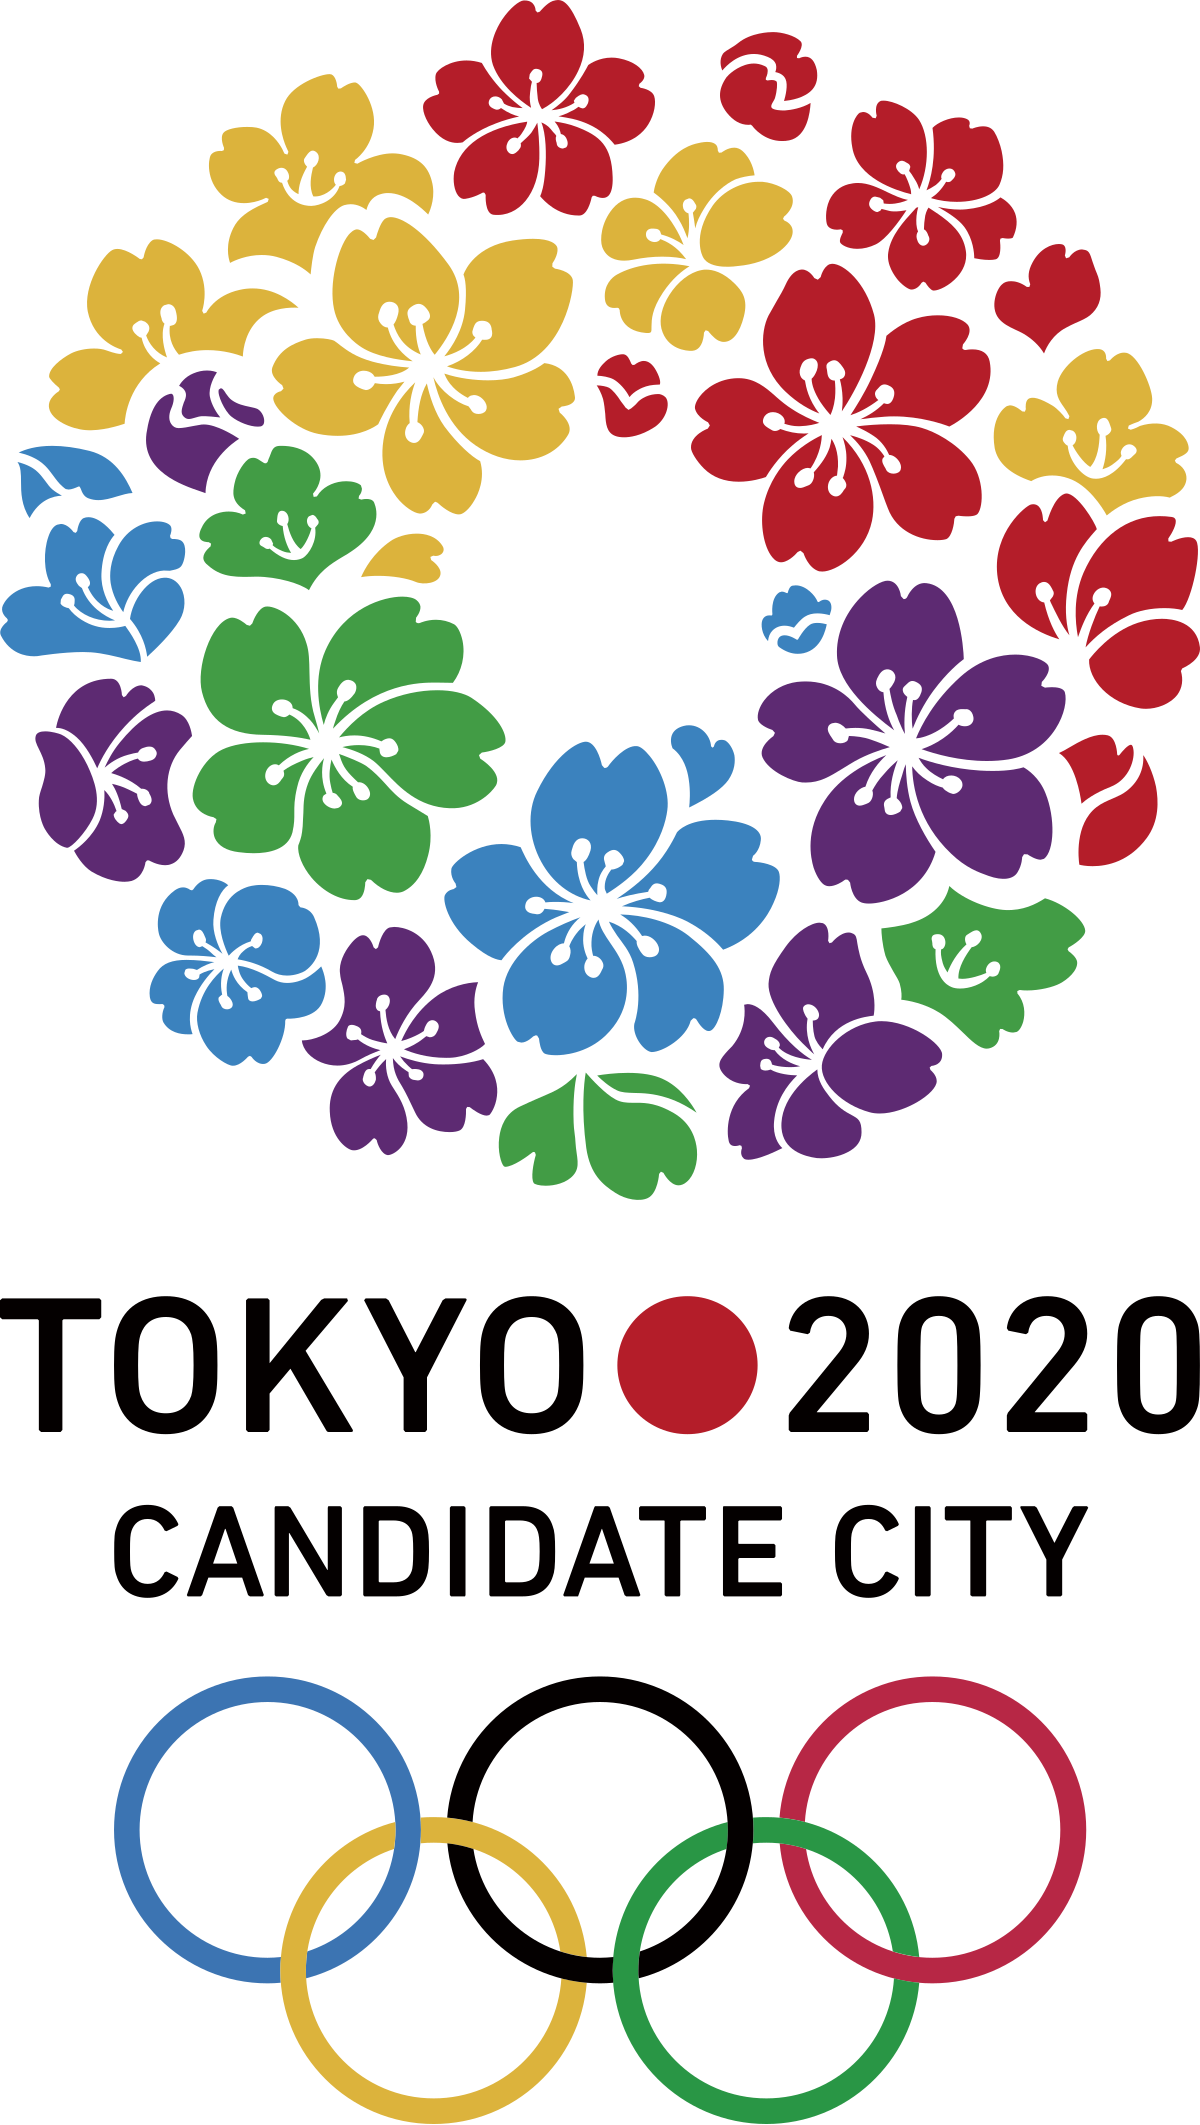 東京申辦年夏季奧運會計劃 维基百科 自由的百科全书